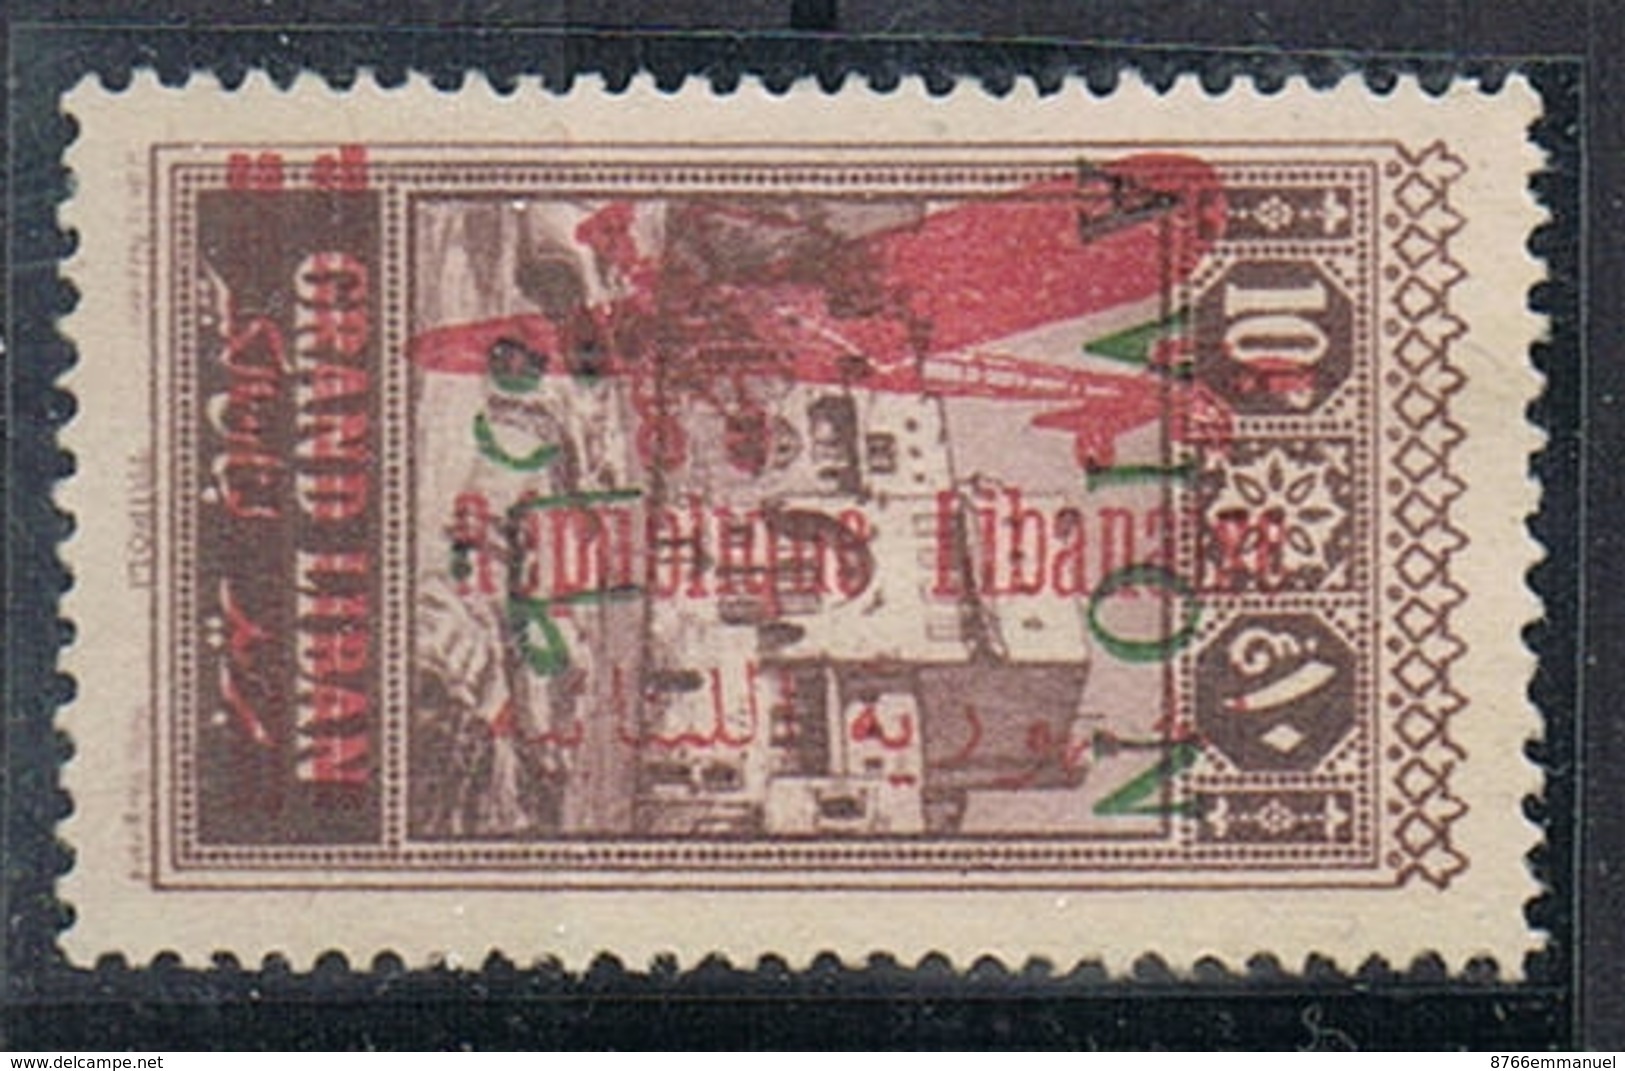 GRAND LIBAN AERIEN N°35a N*  Variété Surcharge Apposée Sur Timbre Aerien N°12 (surcharge Verte +rouge) - Poste Aérienne